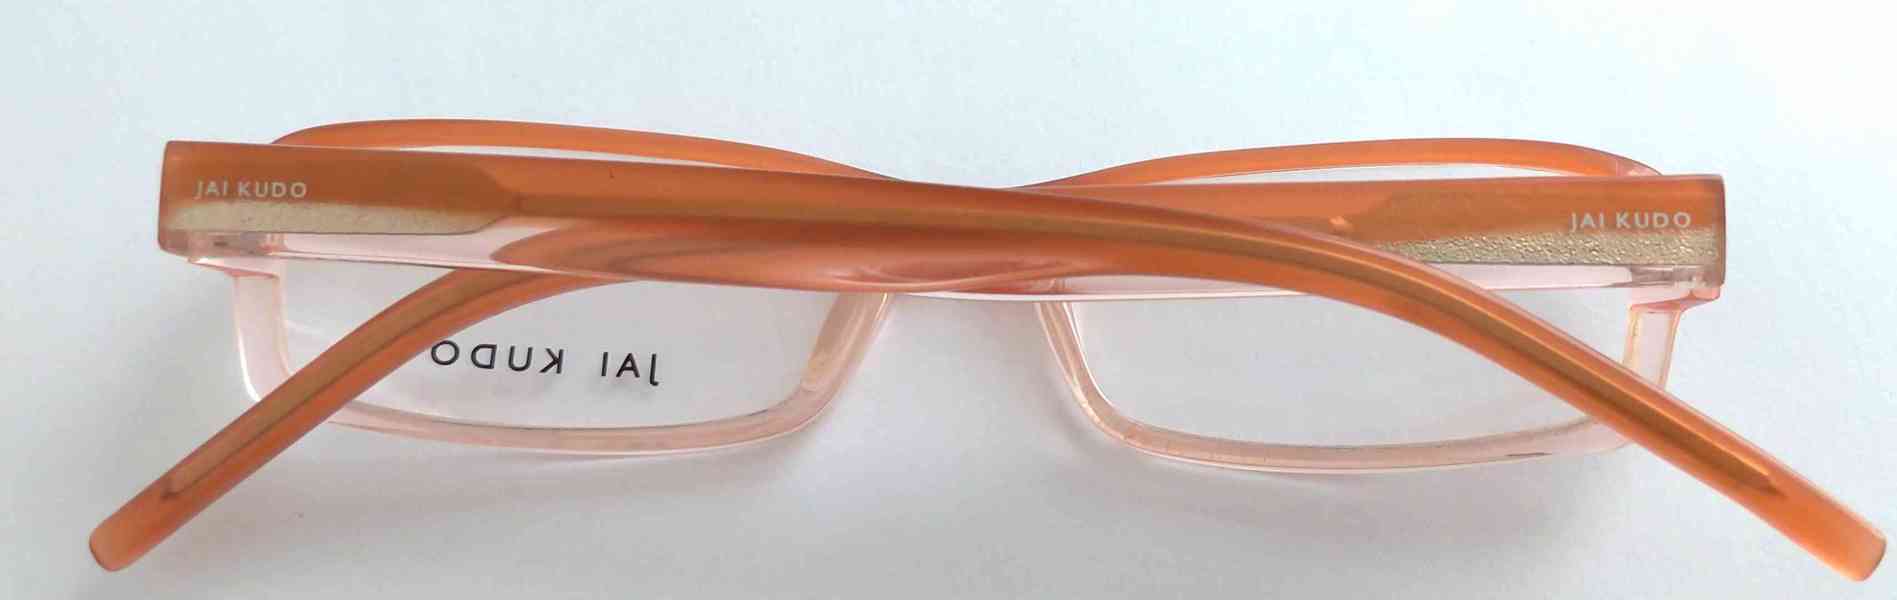 JAI KUDO 1716 P13 dámské brýlové obruby 50-17-140 MOC:2600Kč - foto 10